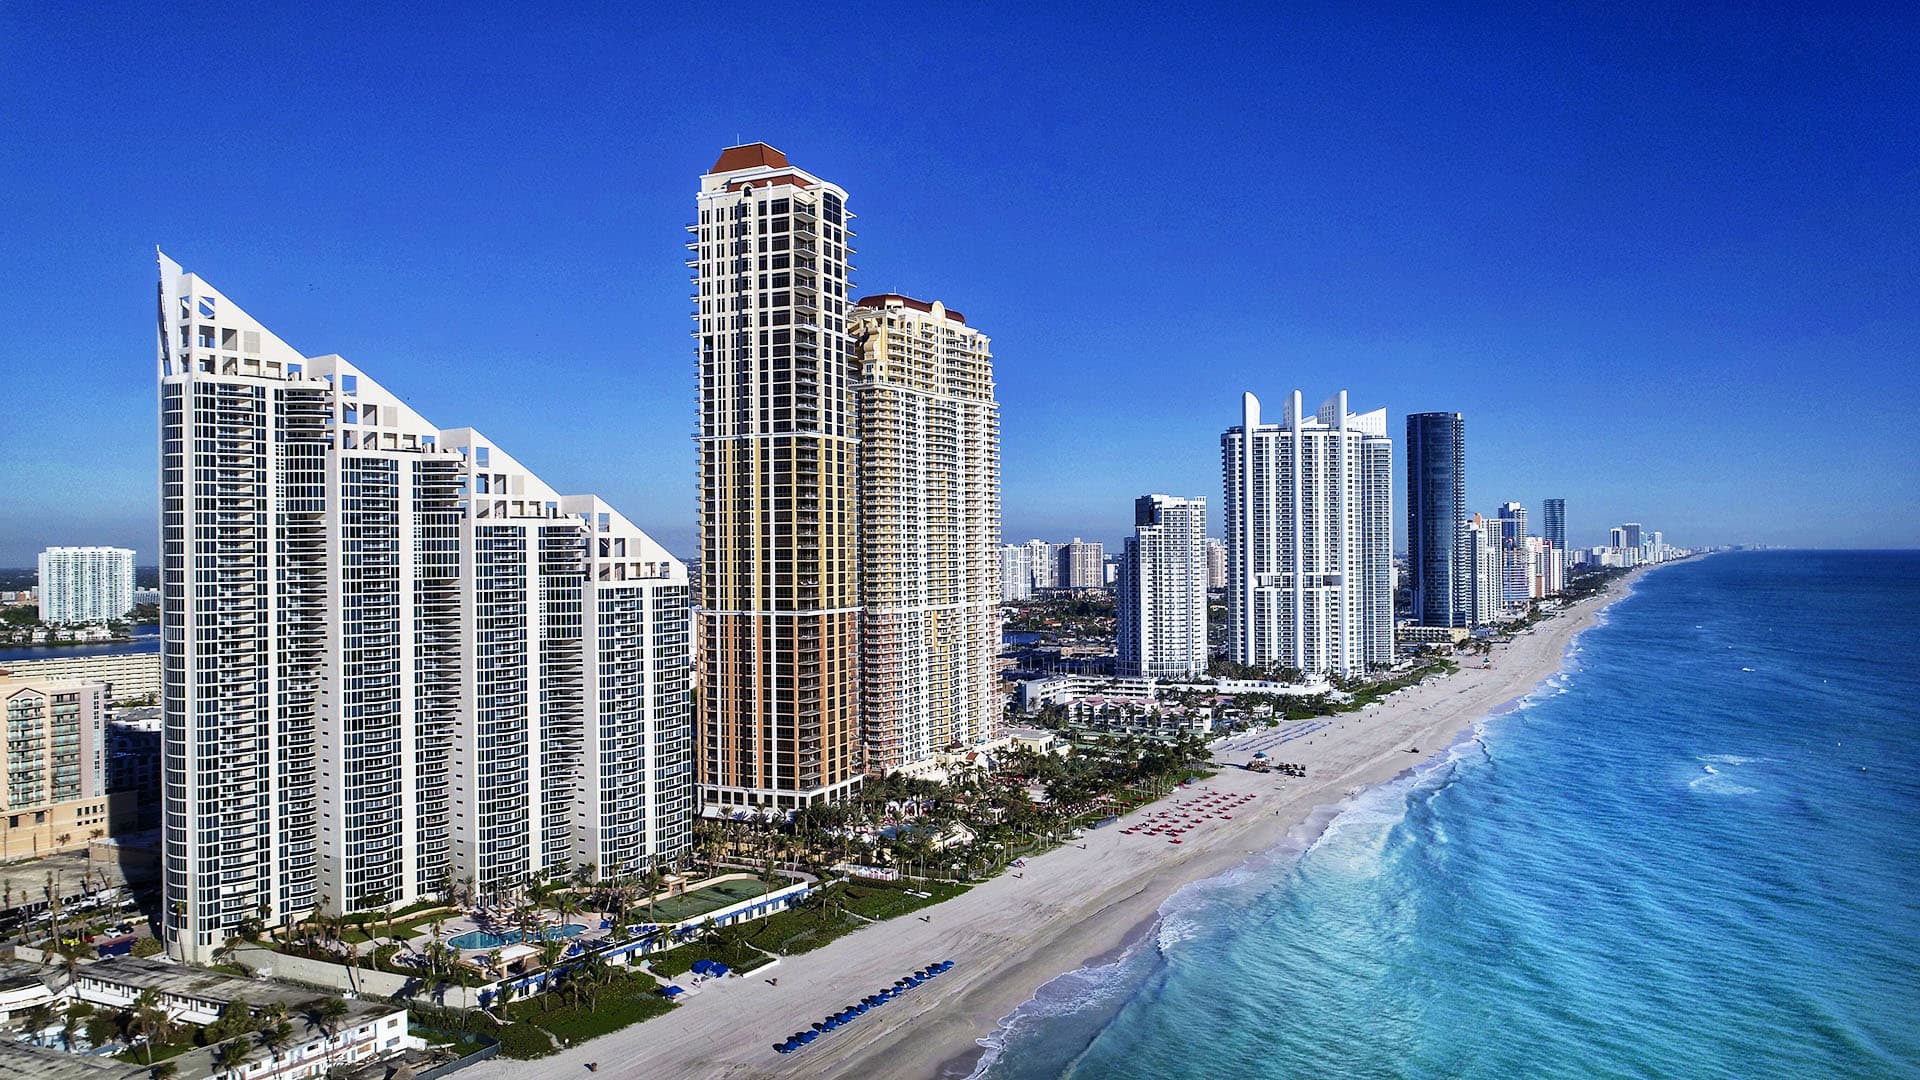 High rises along a beach